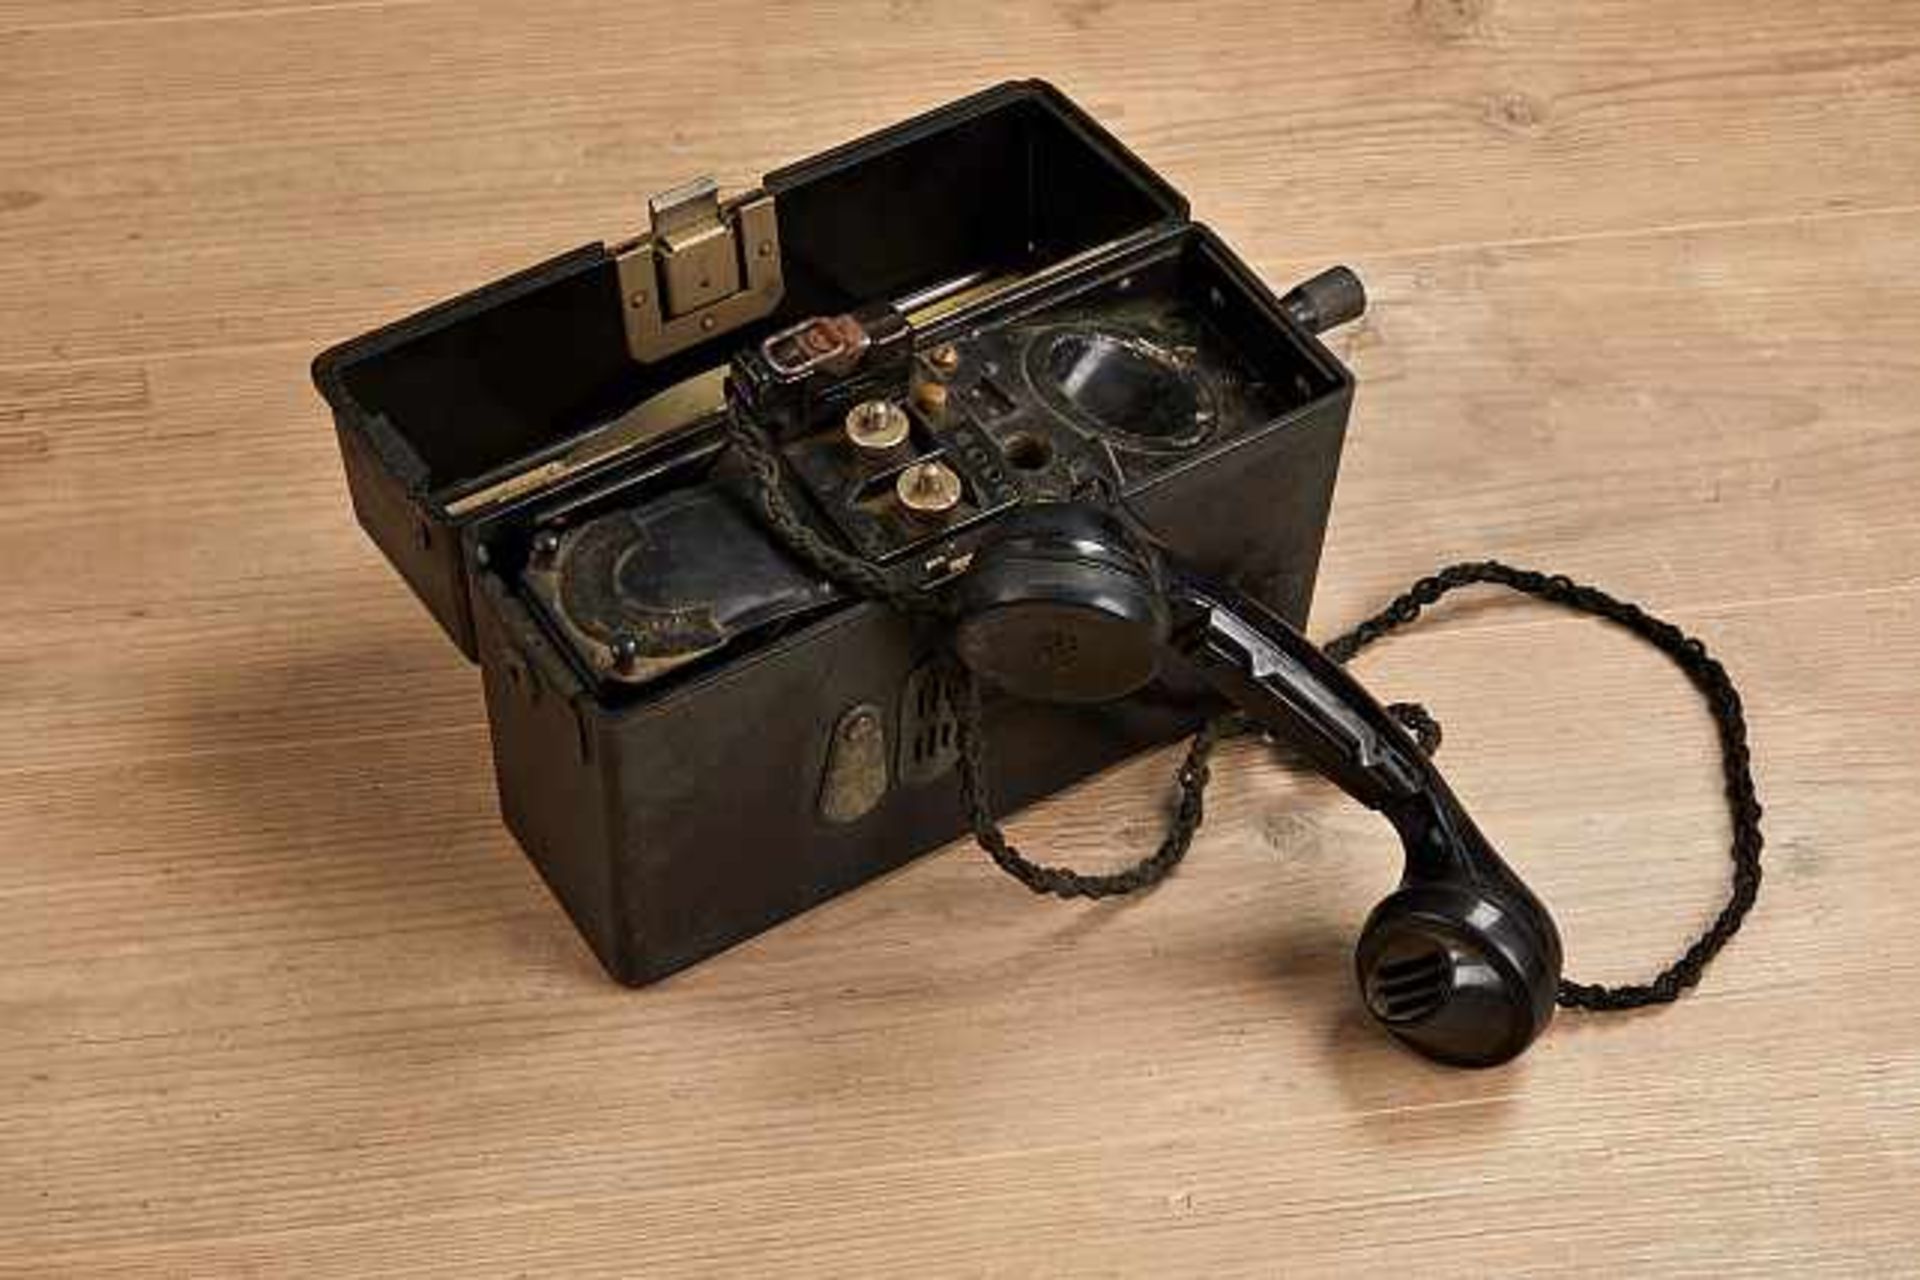 Deutsches Reich 1933 - 1945 - Heer : Army Field Telephone.Bakelite field telephone shows wear/age